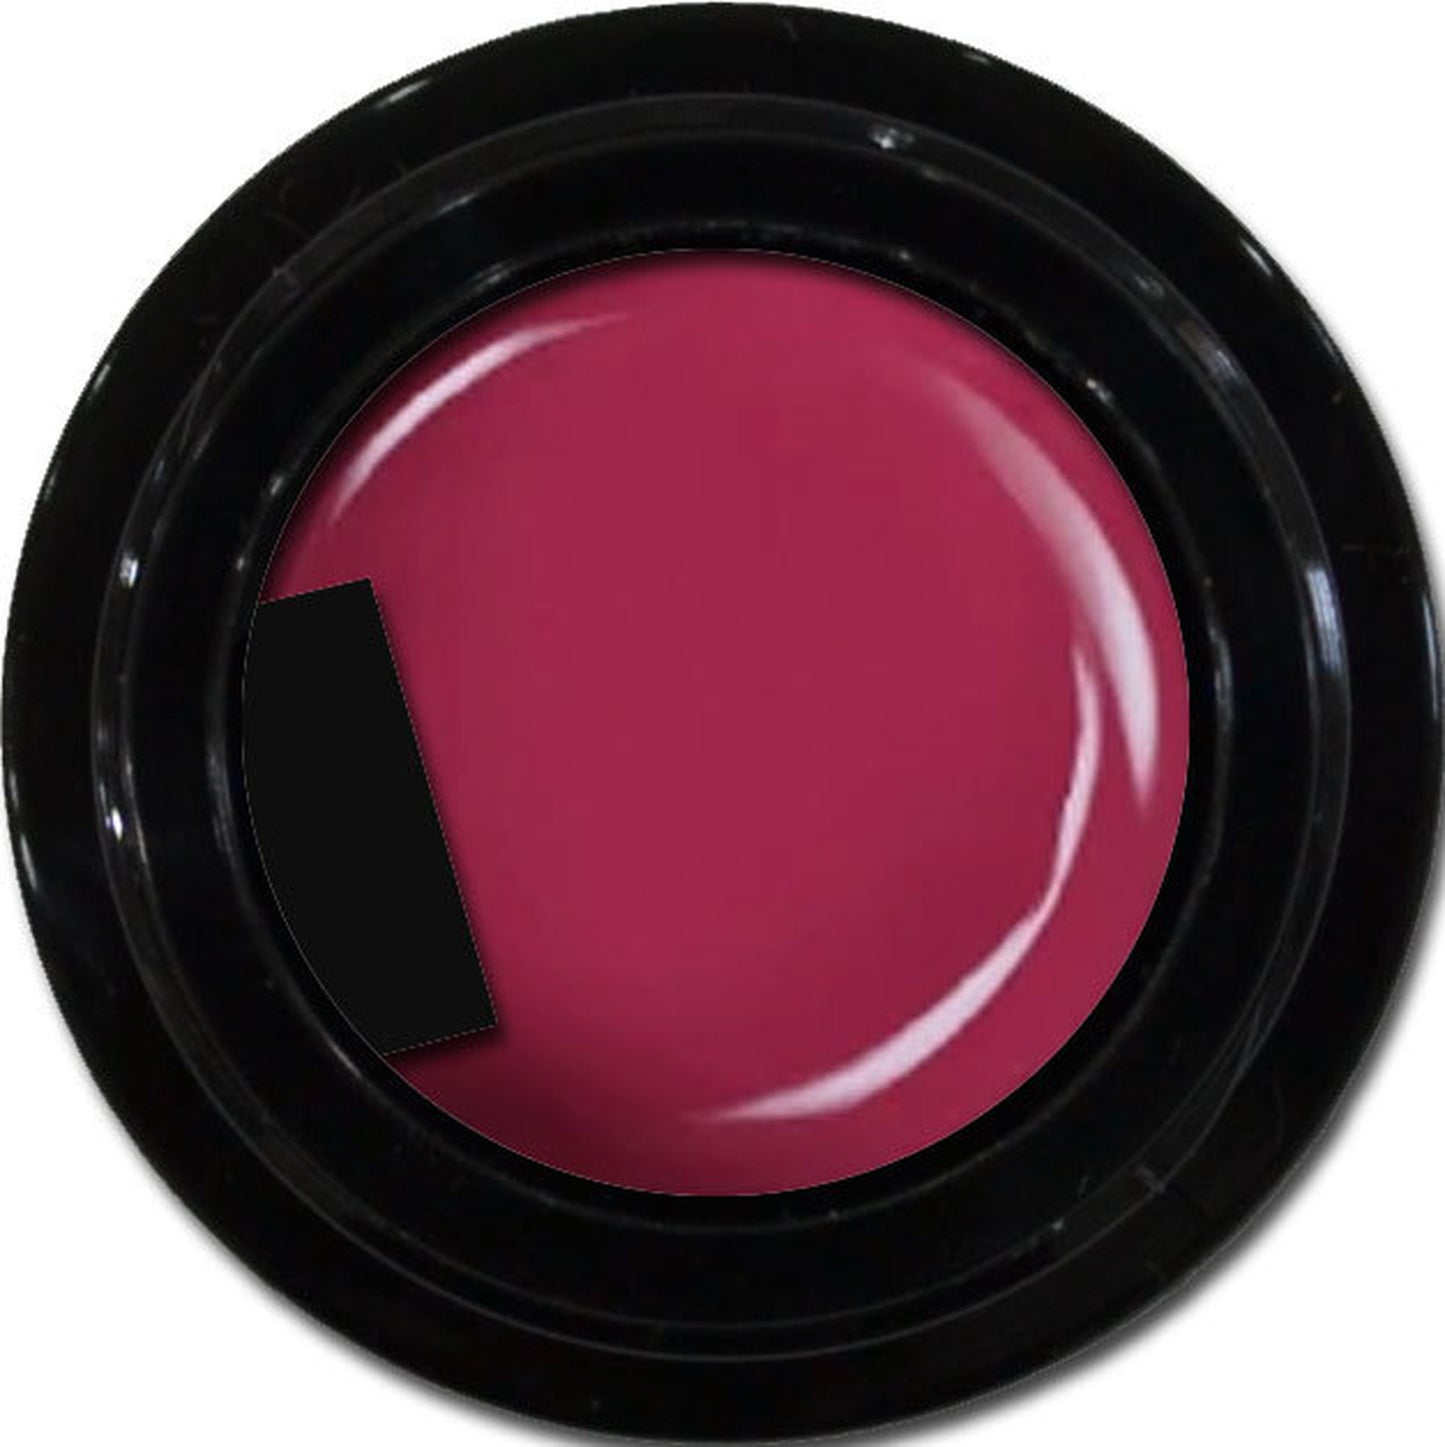 enchant color gel M510 PinkPurple 3g/ マットカラー M510 ピンクパープル 3グラム